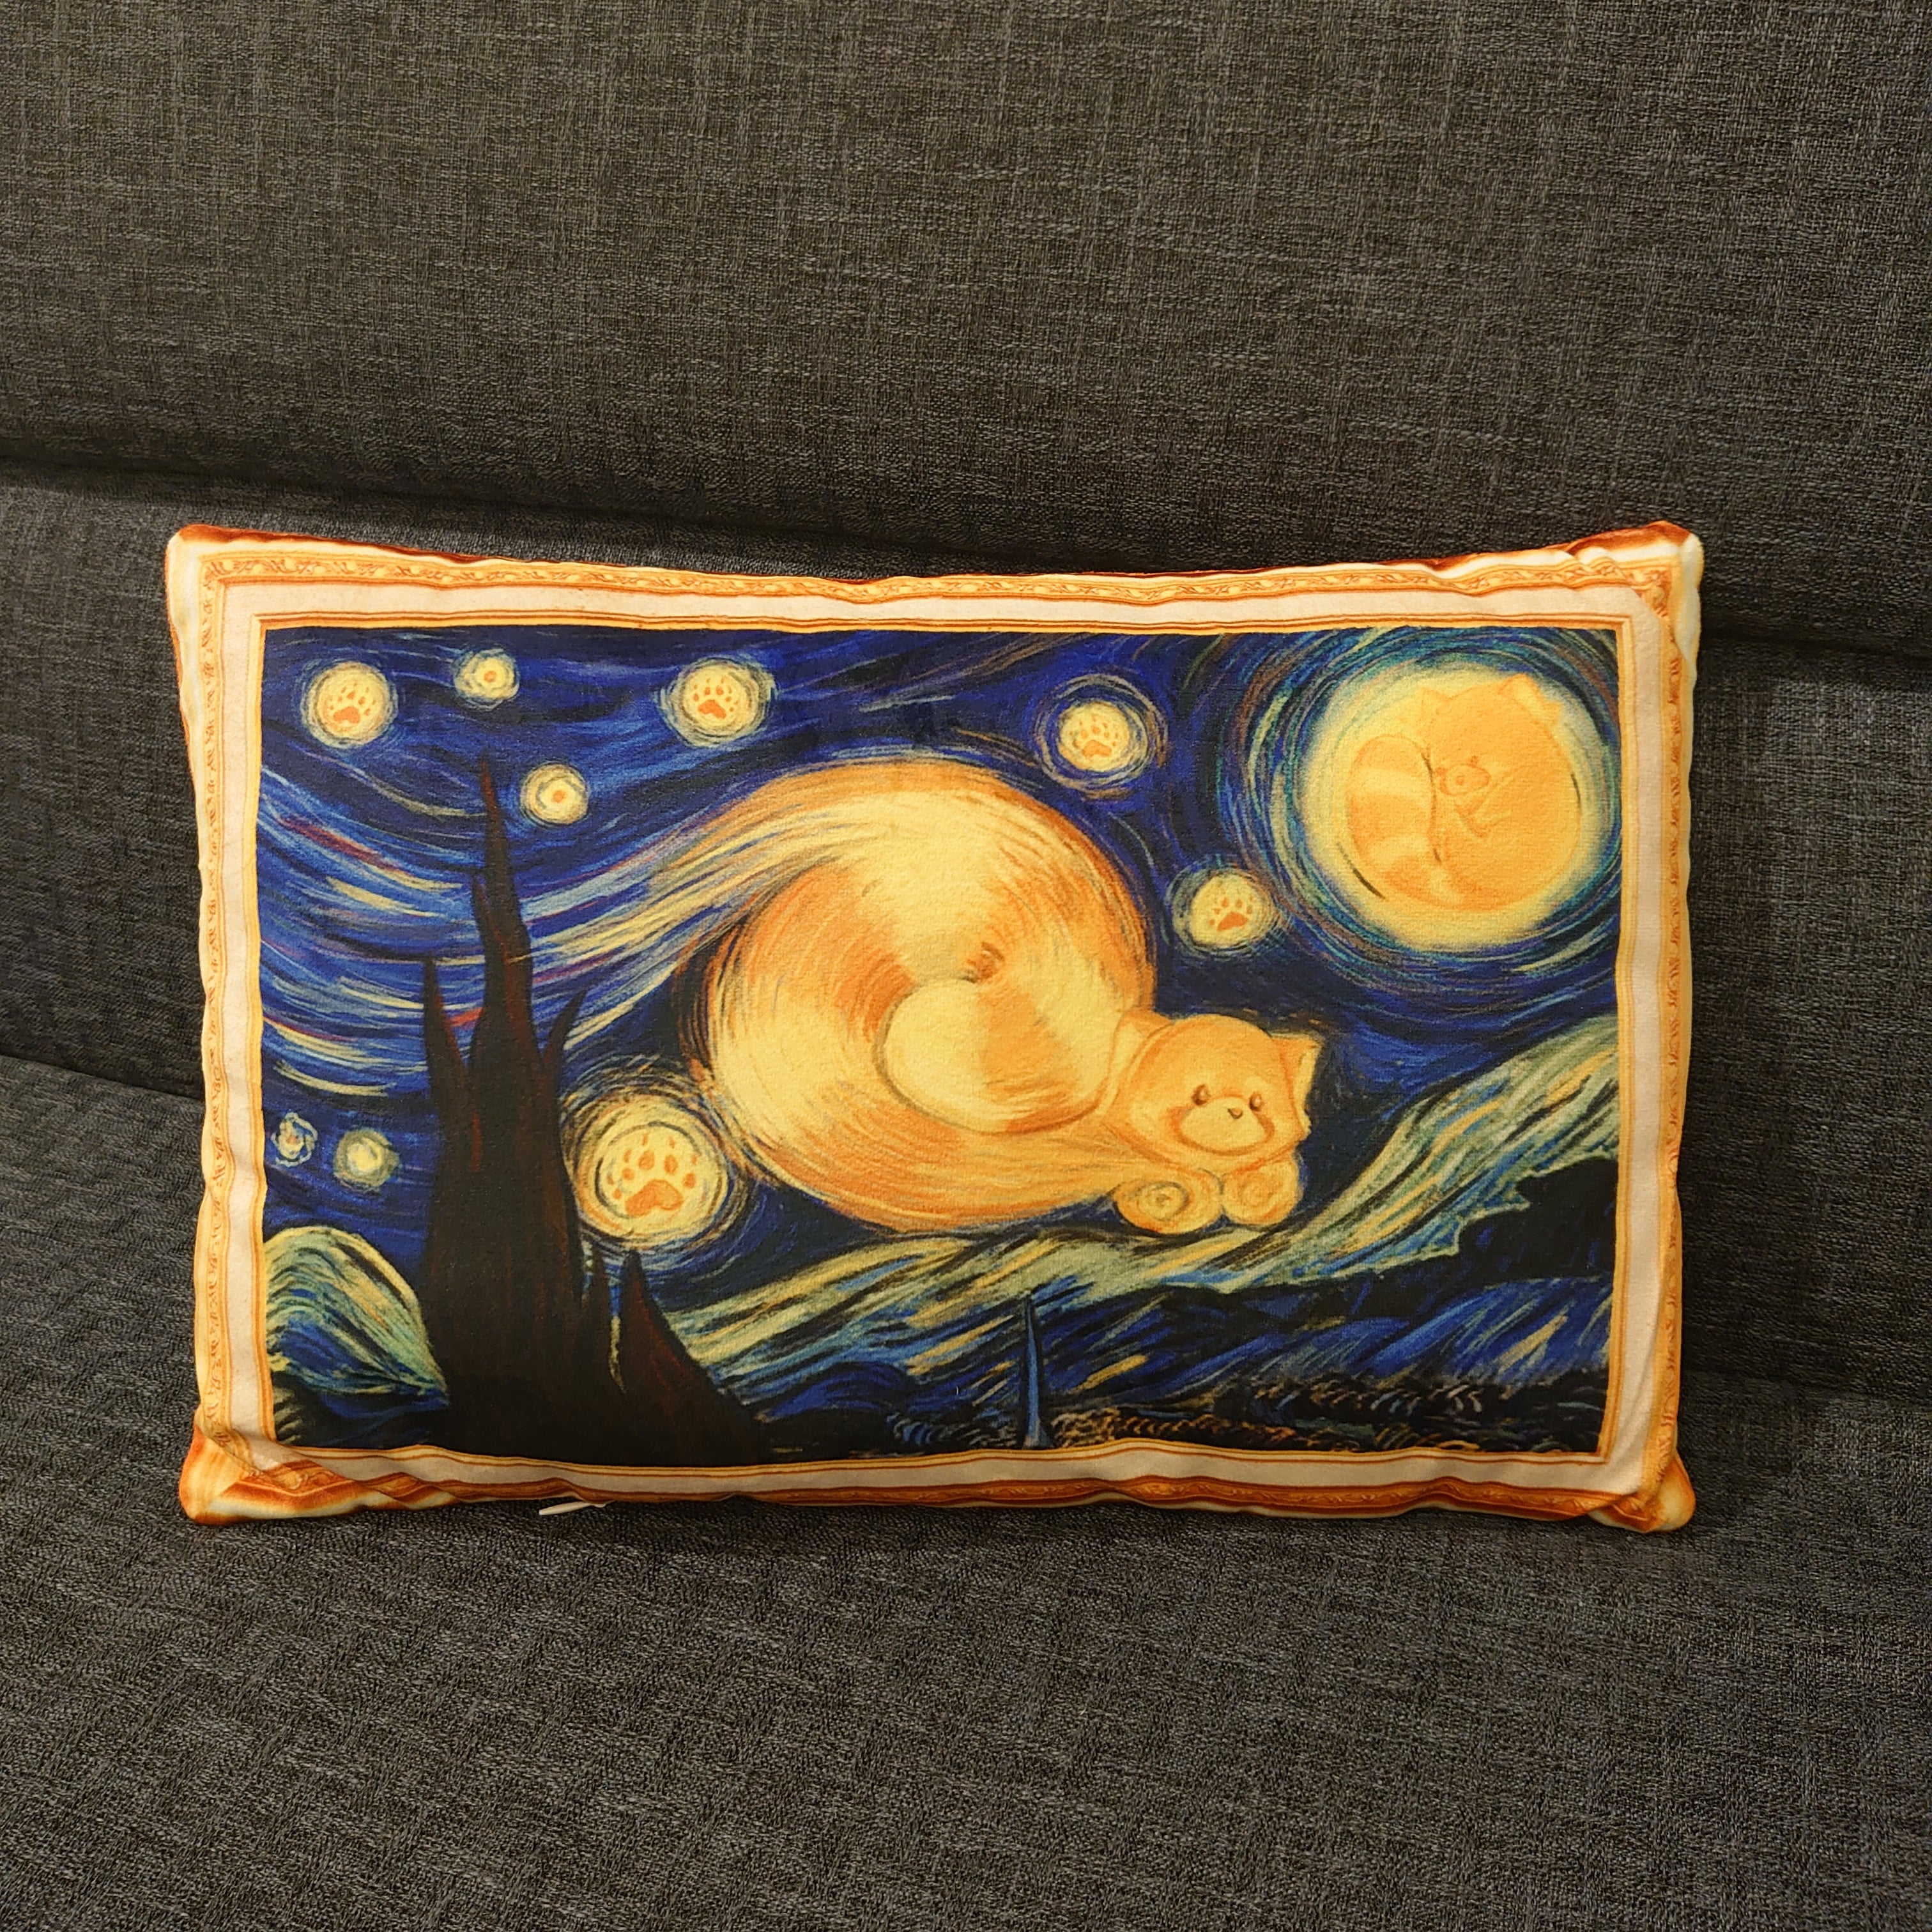 [小熊貓博物館聯乘] 星夜名畫系列抱枕靠枕午睡枕 Red Panda De sterrennacht cushion - HKGIFTFORU